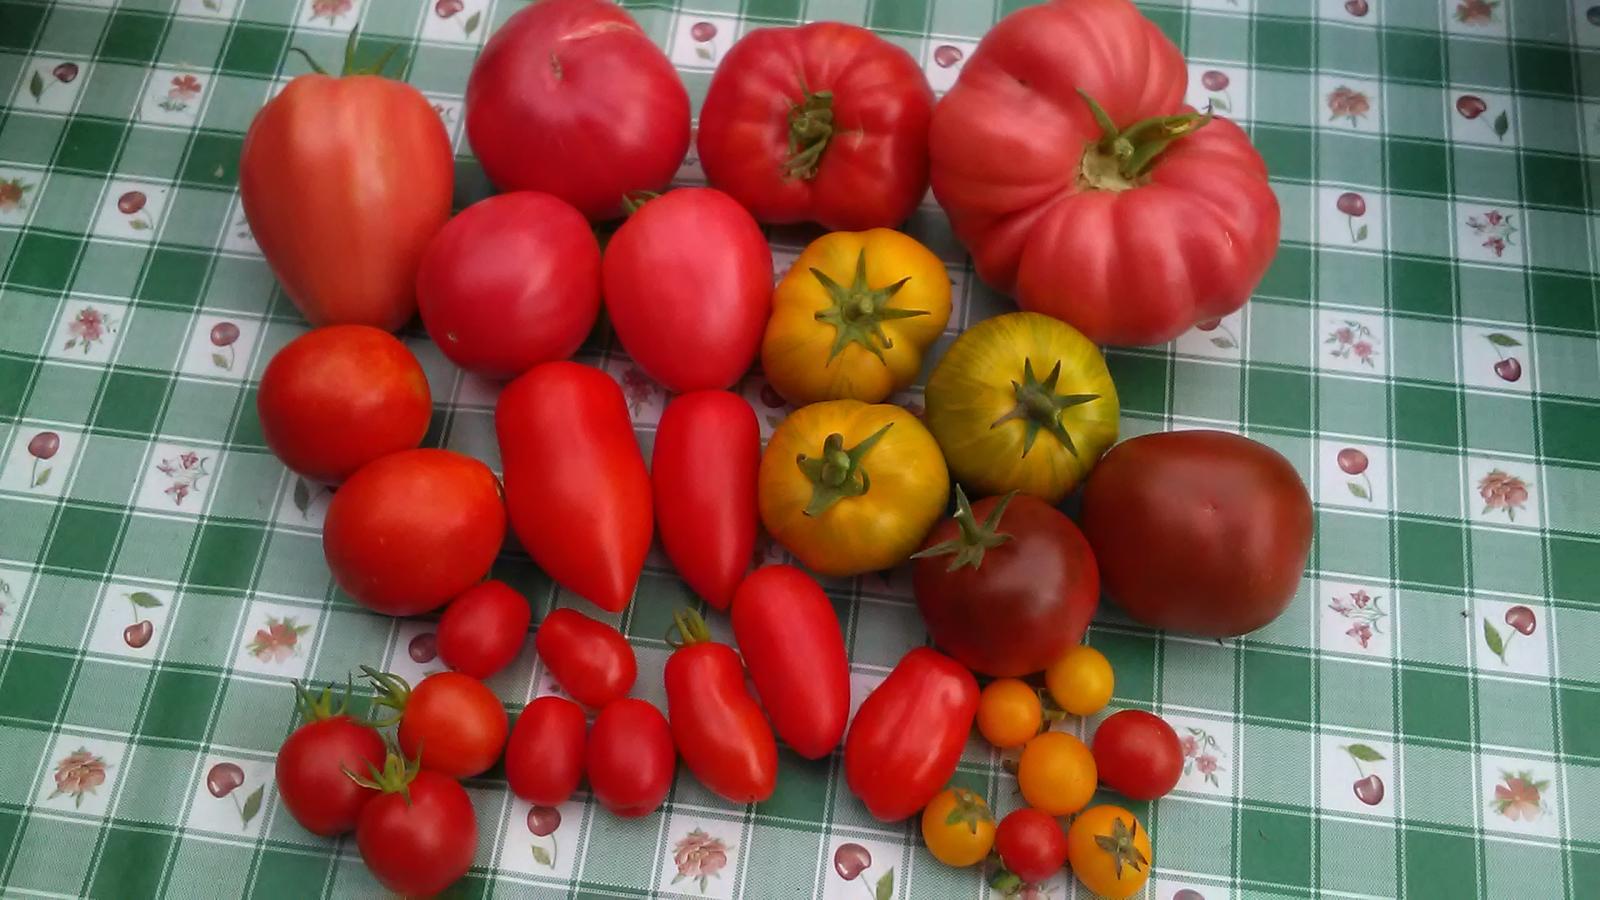 semienka paradajok (zber leto/2021) - Obrázok č. 1